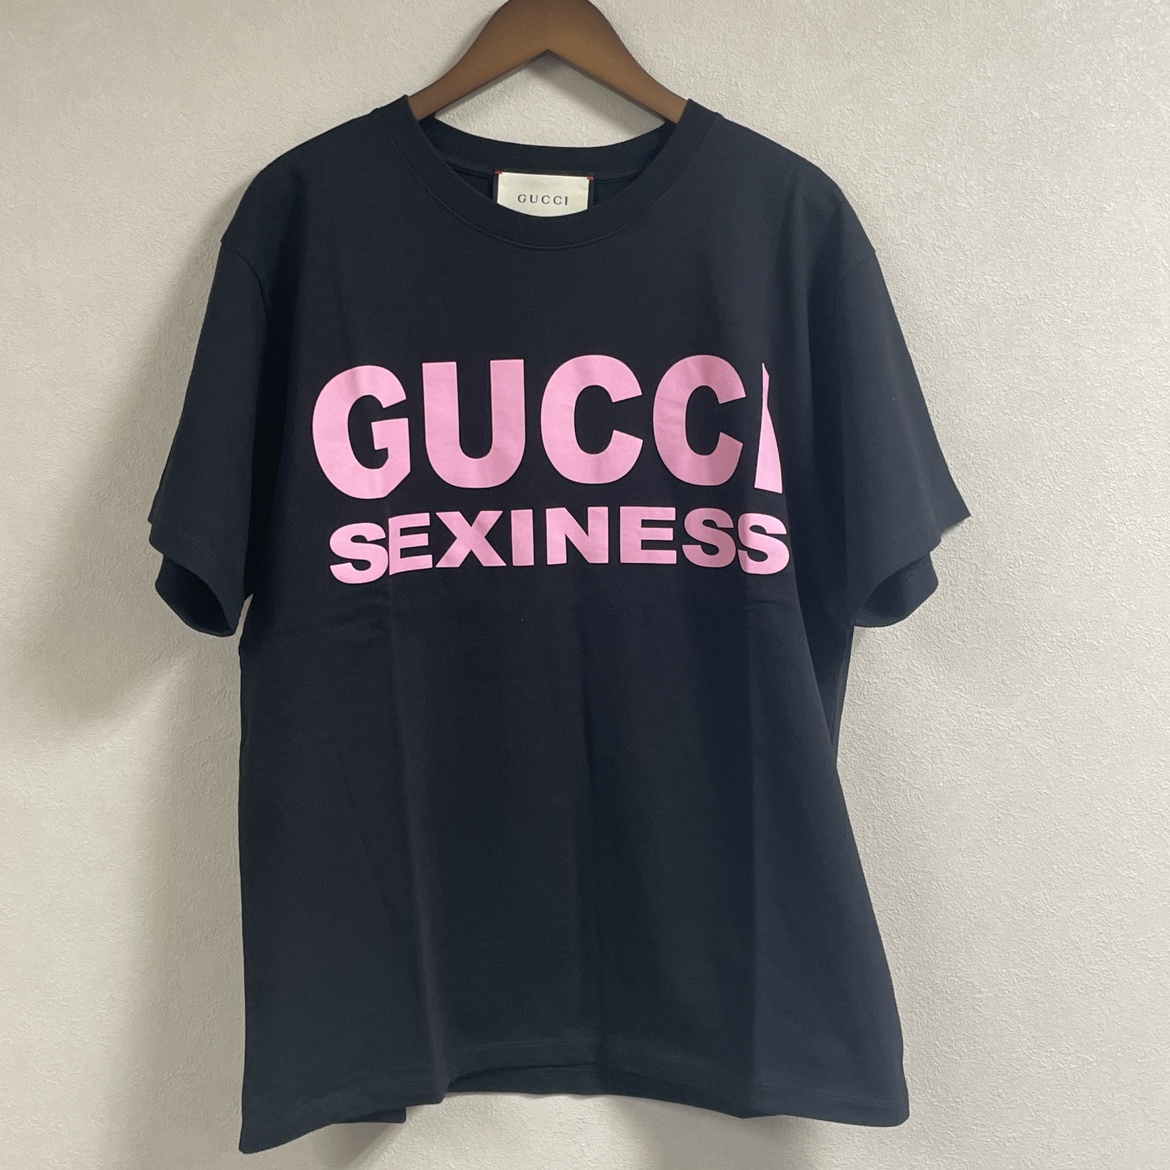 グッチの20SS ブラック ピンク 616036 GUCCI SEXINESS コットン Tシャツの買取実績です。